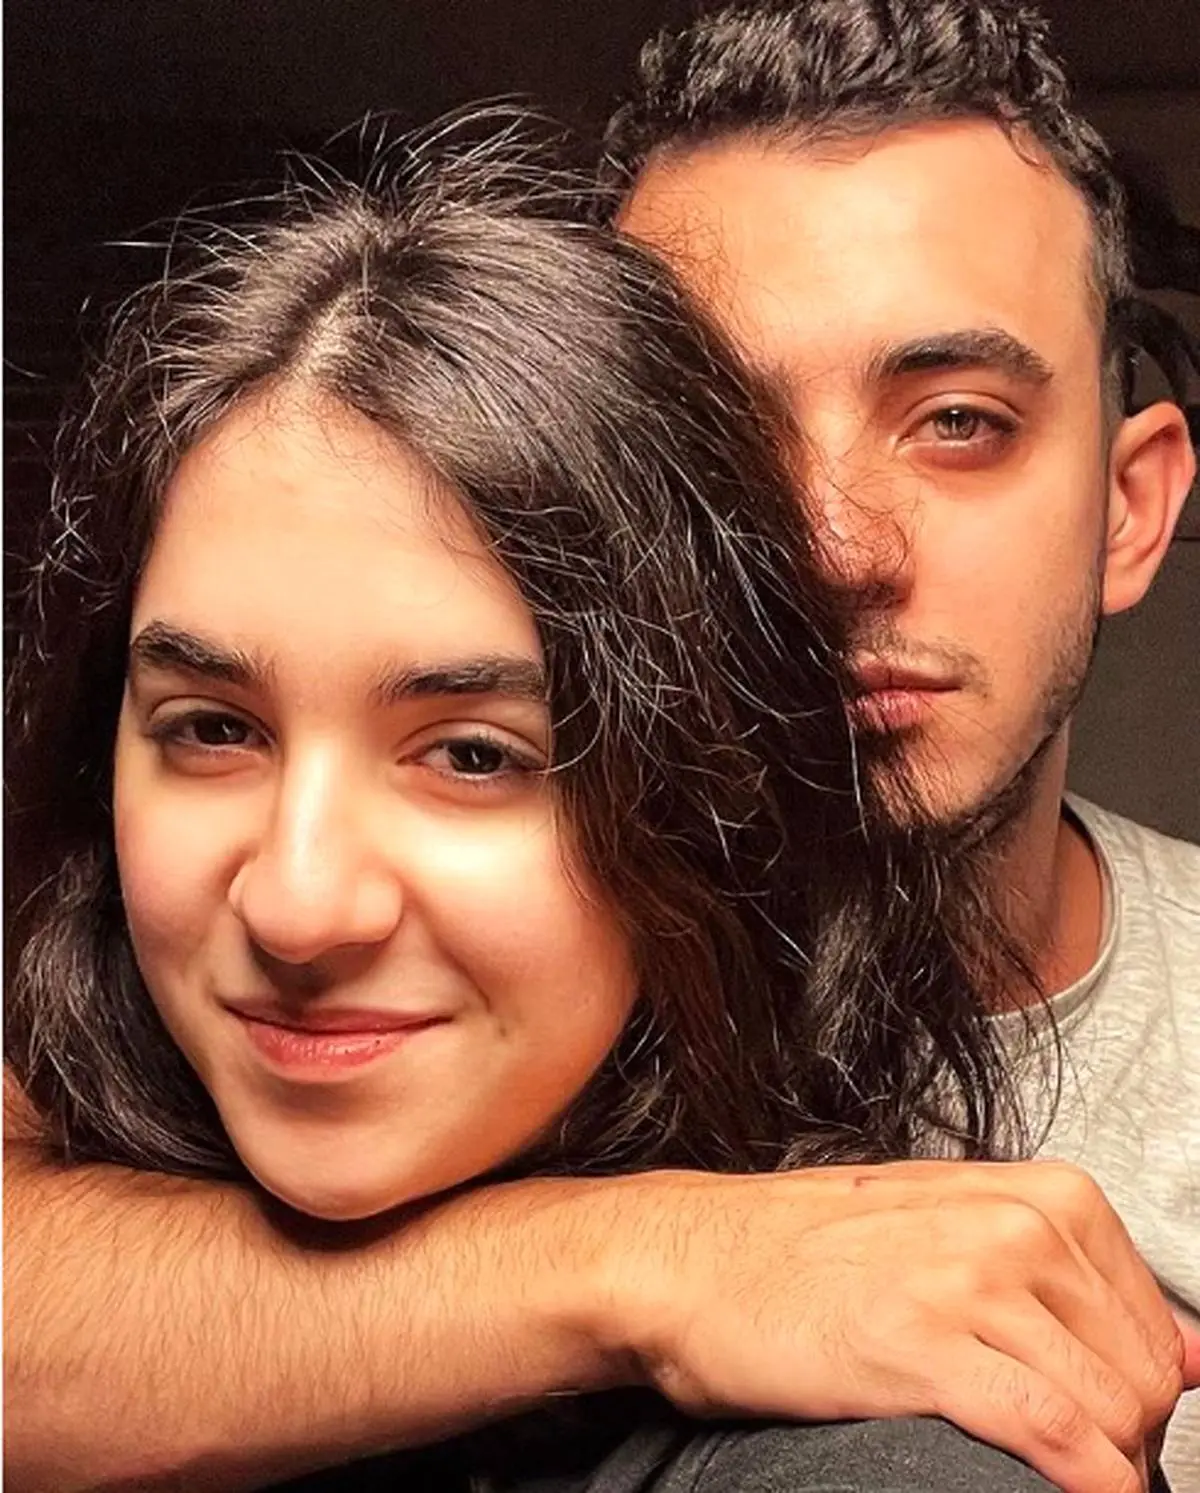 علی شادمان عکس اولین عشقش را منتشر کرد | عکس خاطره انگیز و زیبای علی شادمان با اولین عشق اش